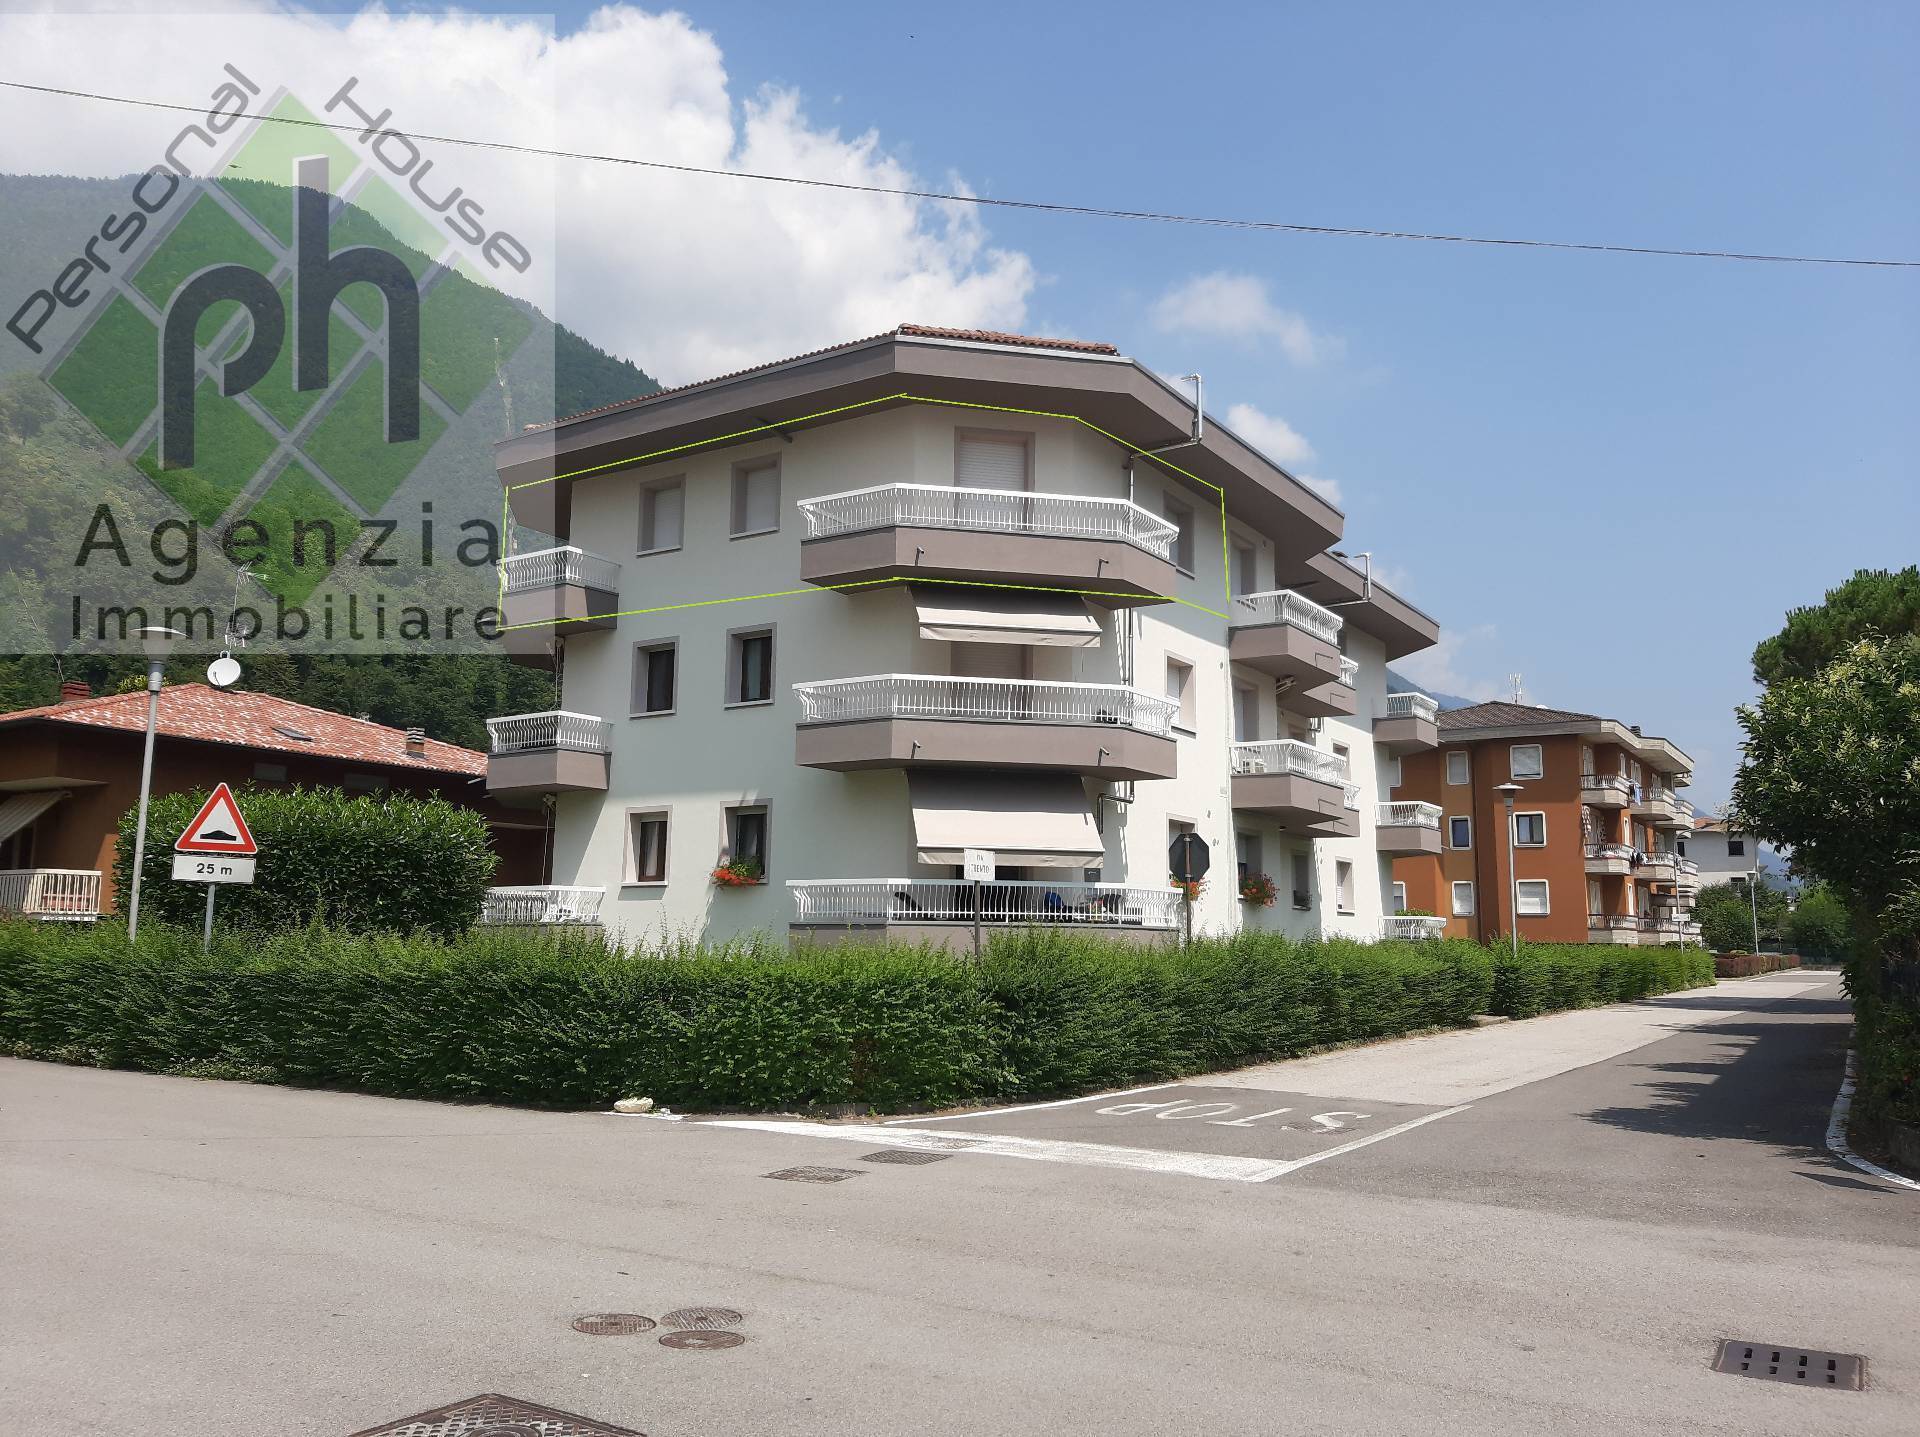 Appartamento in vendita a Bagolino, 4 locali, zona Località: PonteCaffaro, prezzo € 160.000 | PortaleAgenzieImmobiliari.it